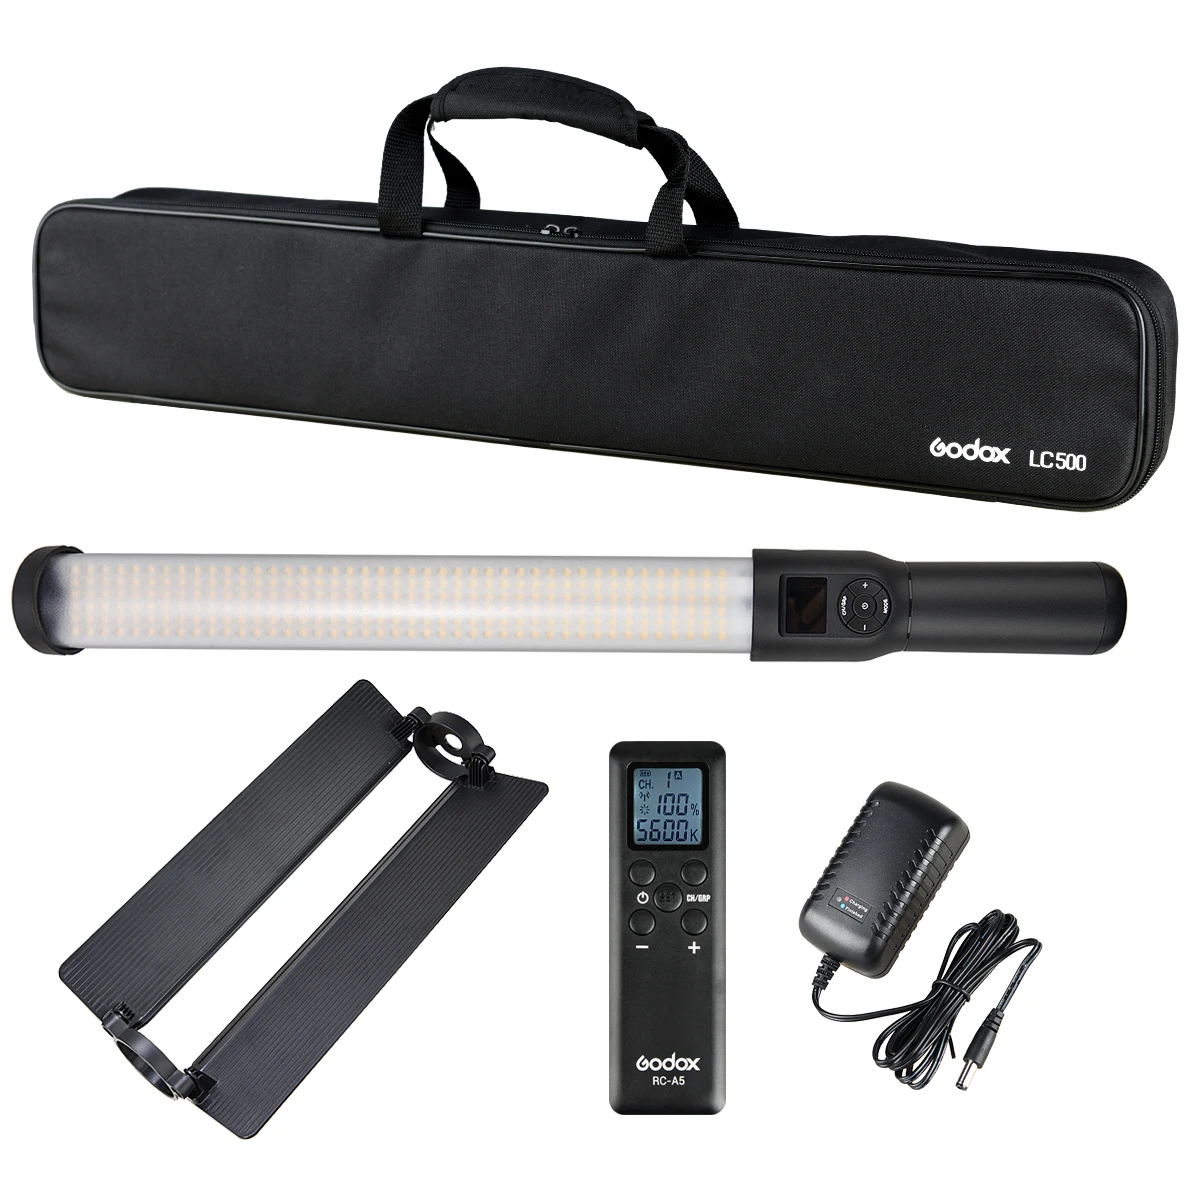 Godox LC500 светодиодный светильник с ручкой 3300 K-5600 K регулируемый встроенный аккумулятор lithiunm+ светильник с дистанционным управлением+ зарядное устройство переменного тока